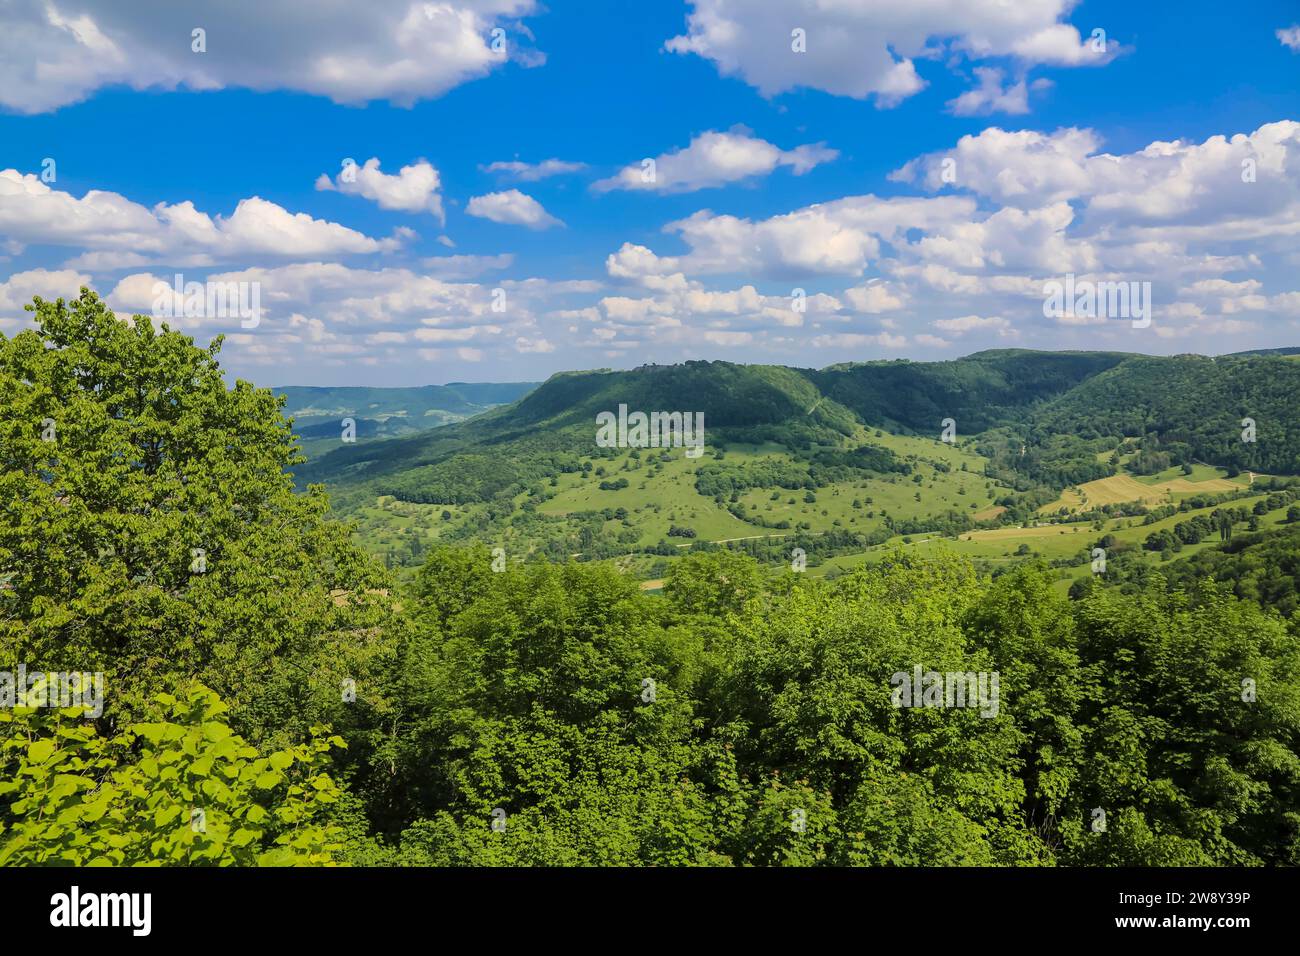 Blick vom Schloss Teck, Burg auf einem Hügel, Gipfellage, Gipfelburg auf dem Teckberg am Albtrauf, mittelalterliche Ruine, blauer Himmel mit Wolken Stockfoto